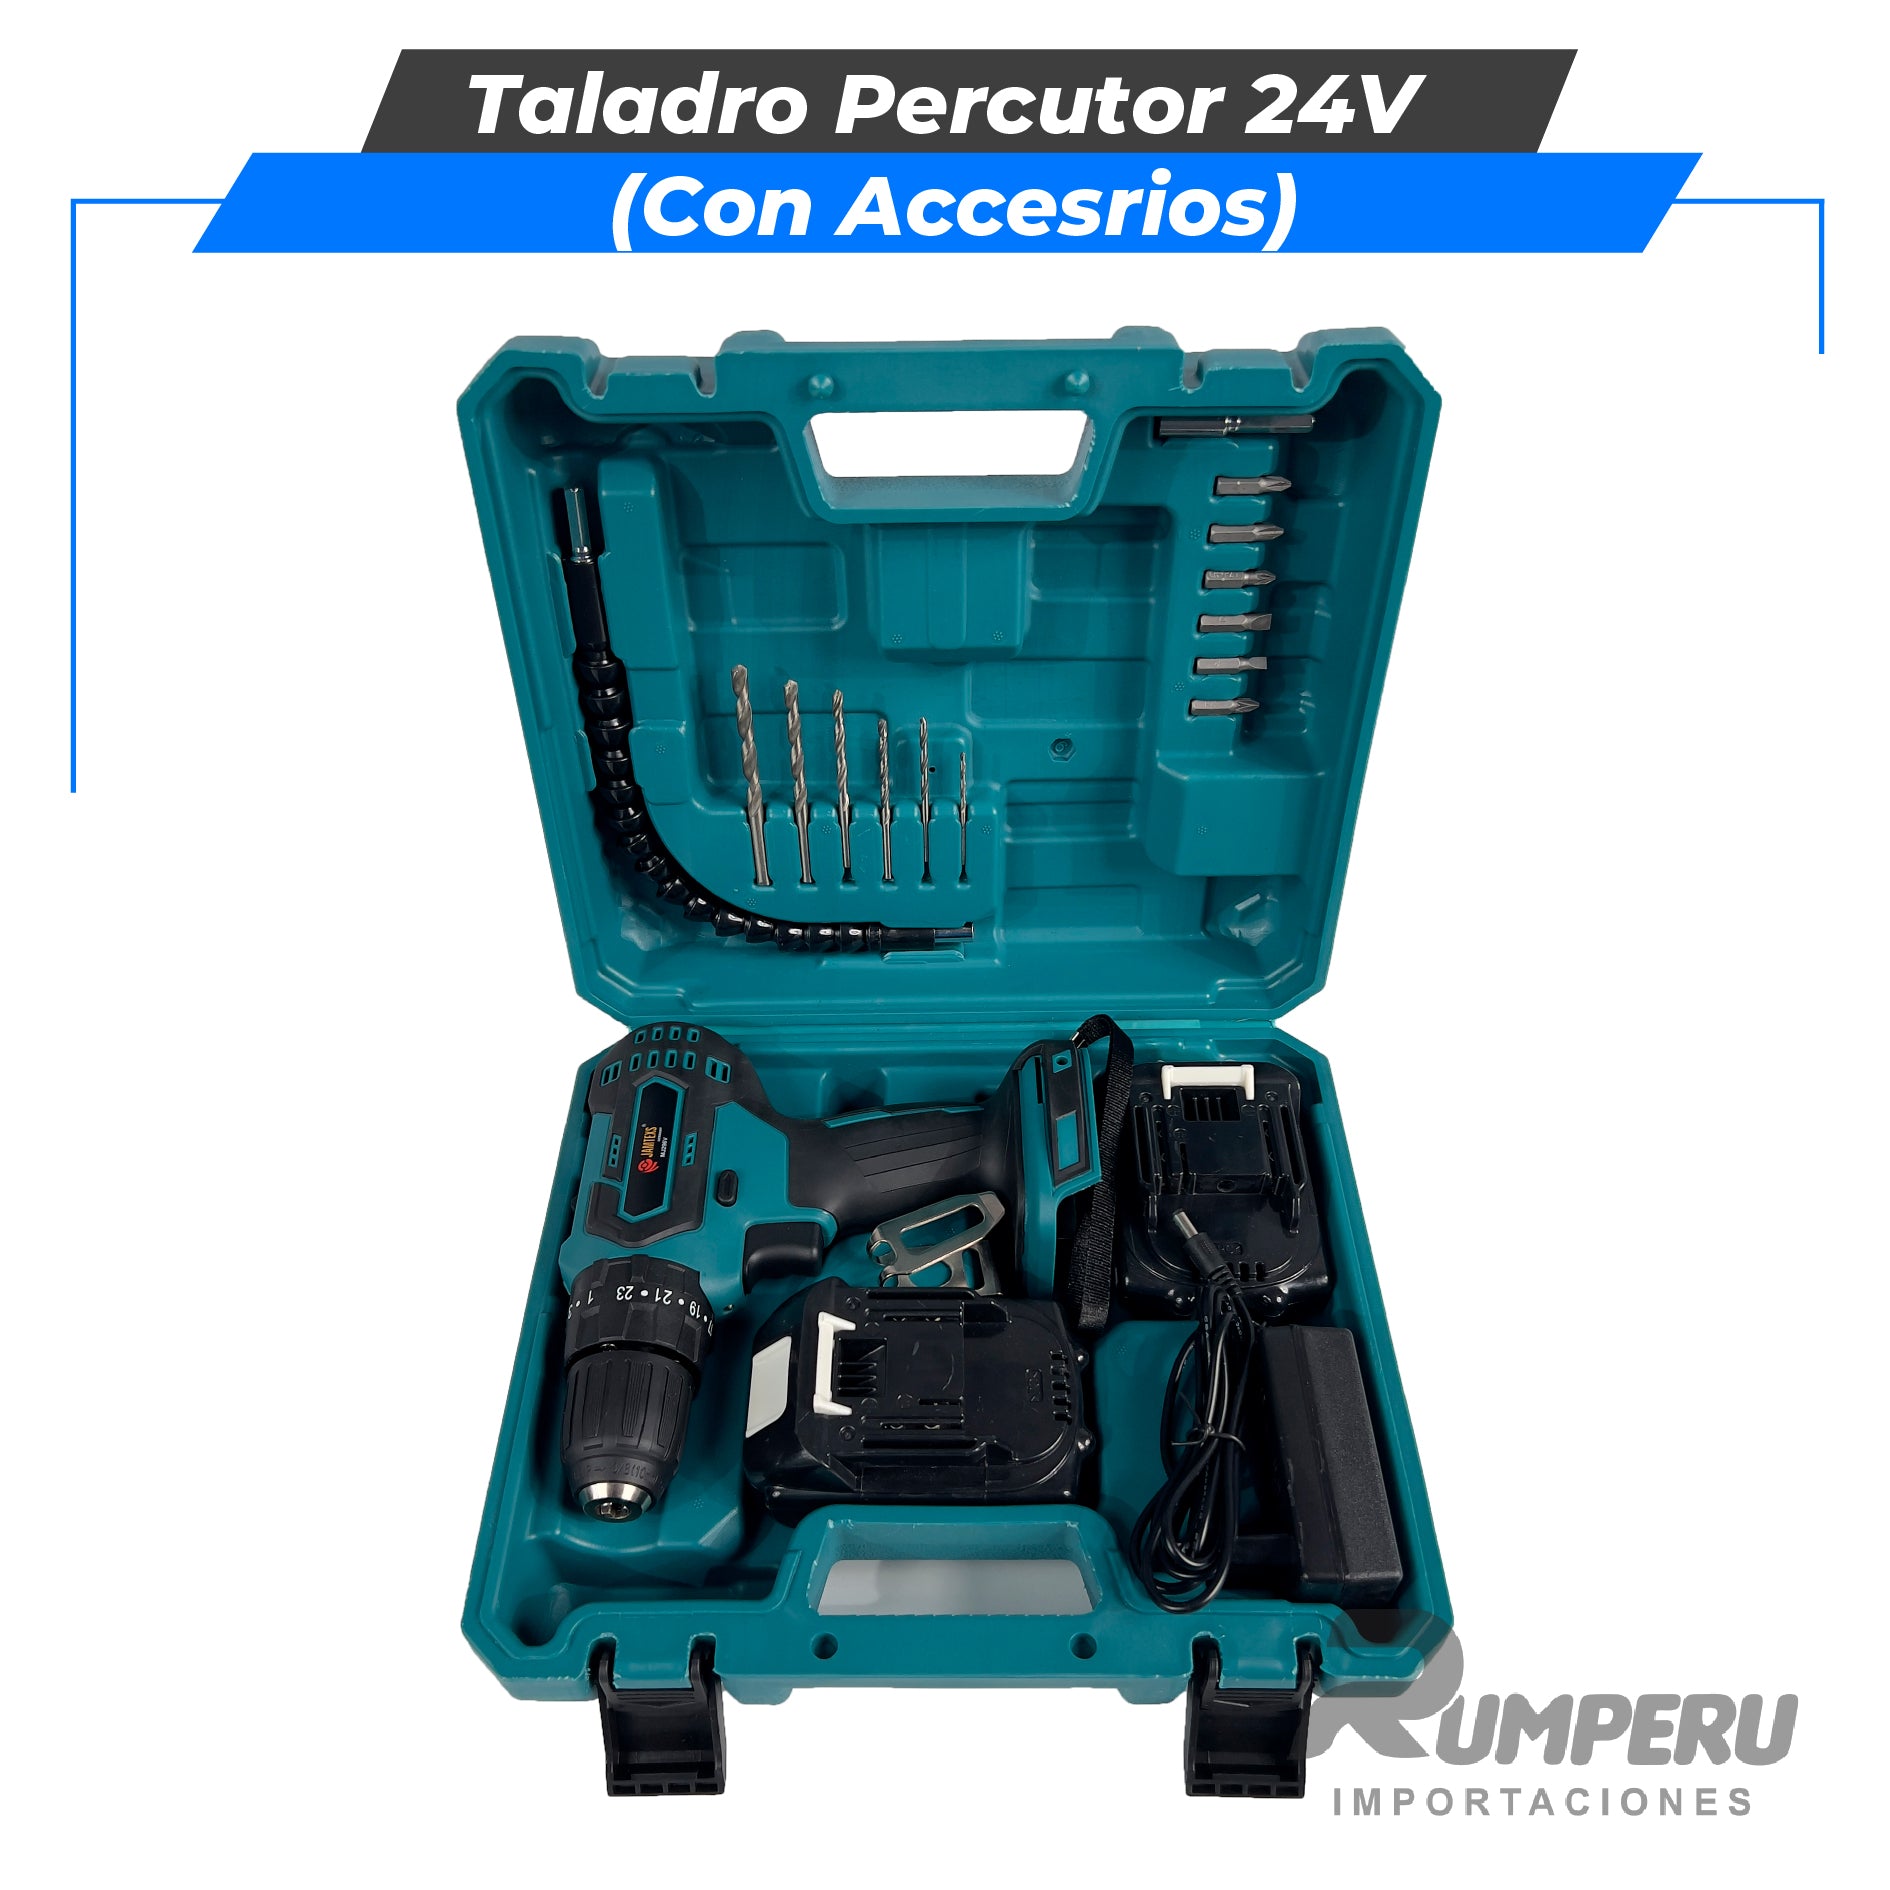 Taladro percutor 24V con Accesorios